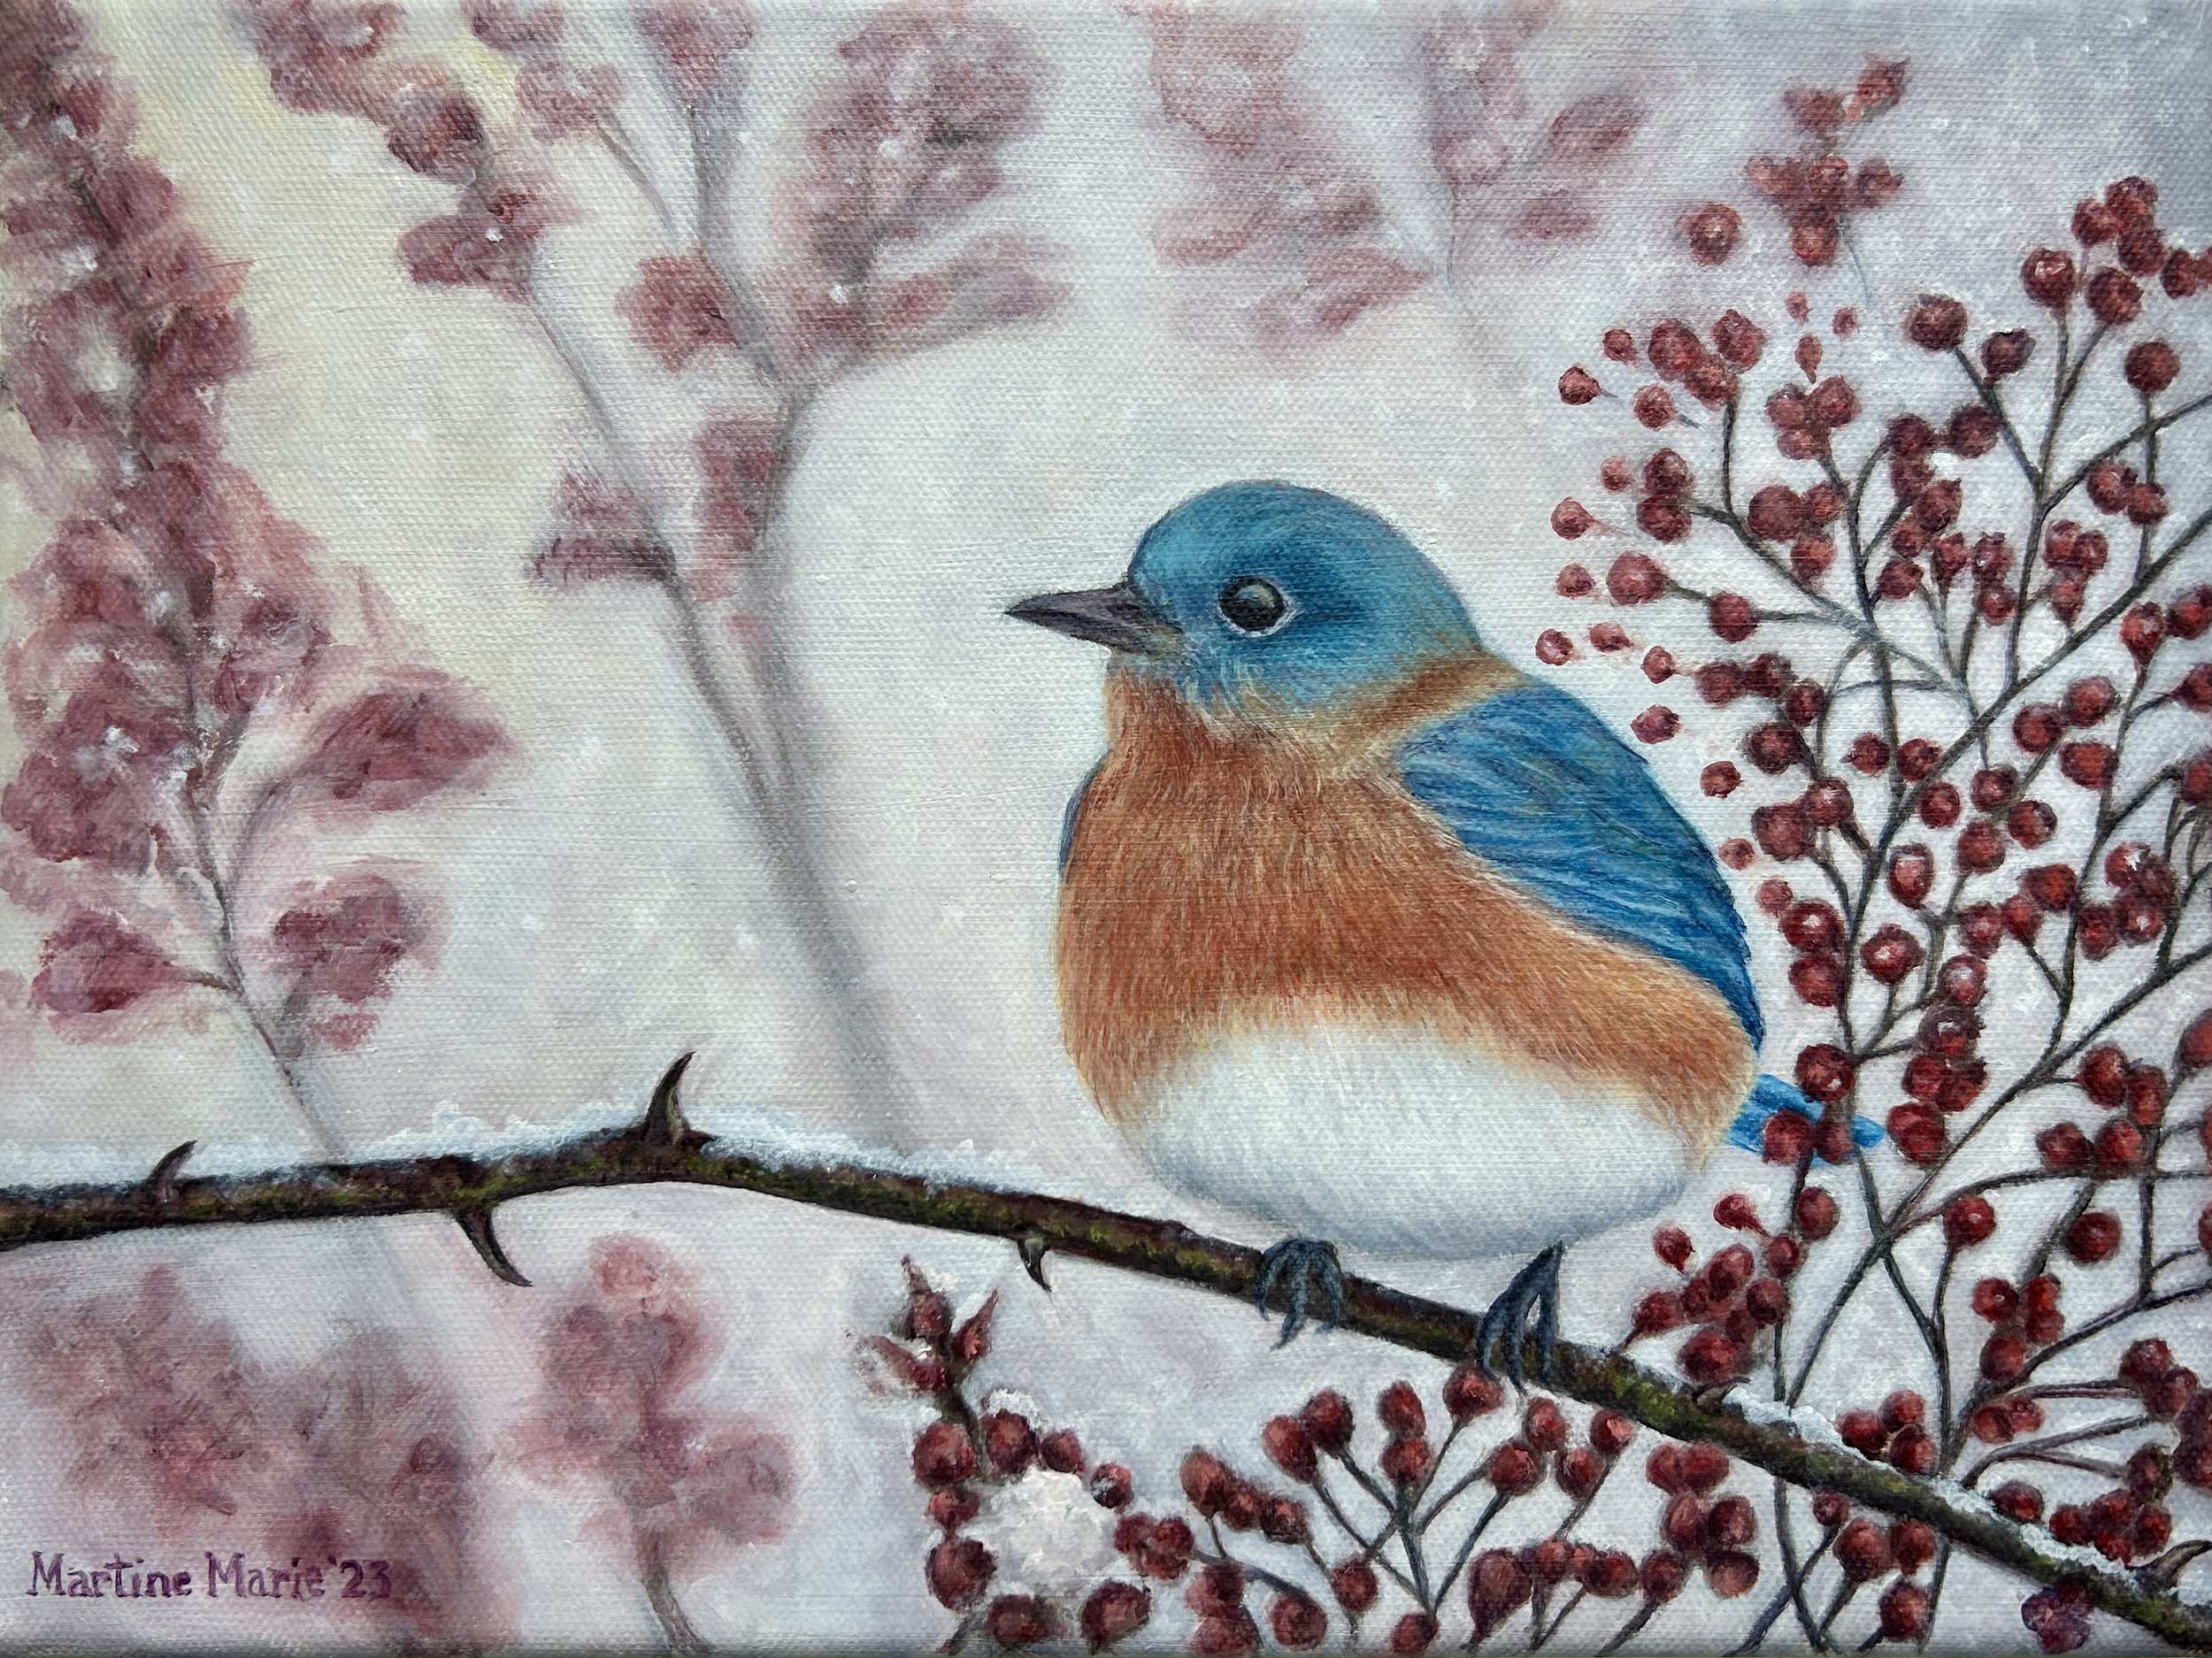 Eastern Bluebird in Winter by Martine Marie